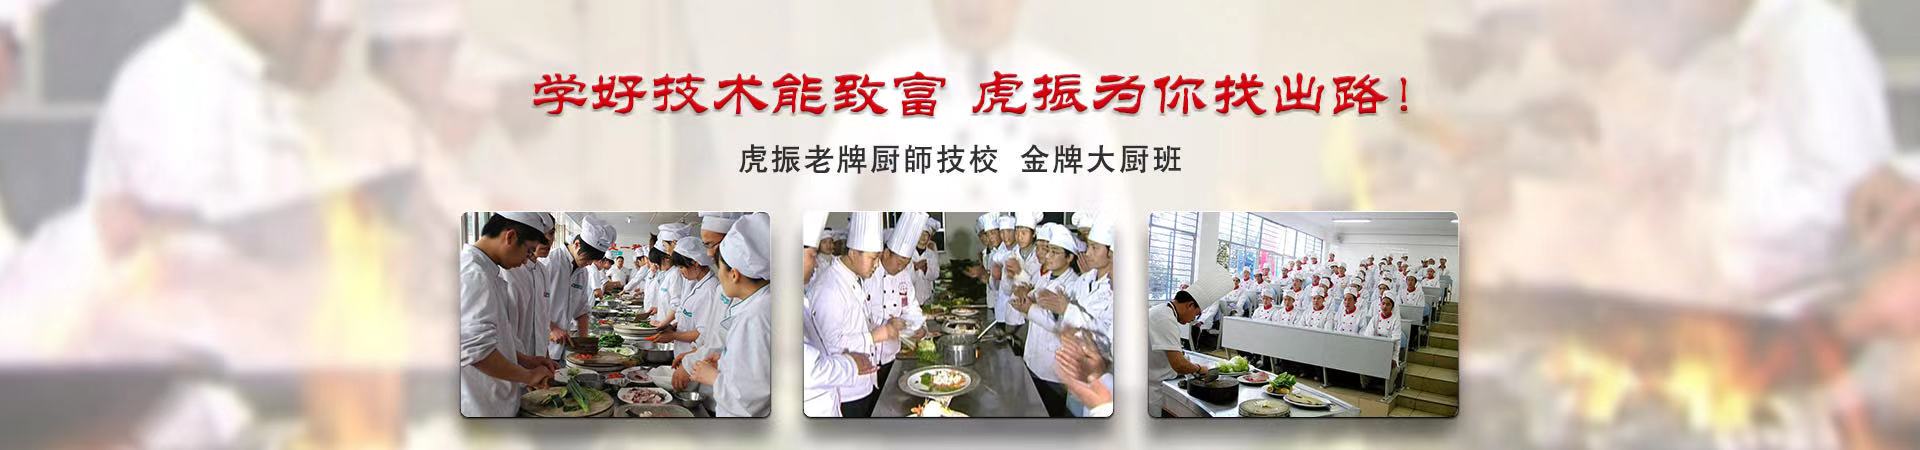 厨师培训、岳阳本地厨师培训、岳阳、岳阳厨师培训